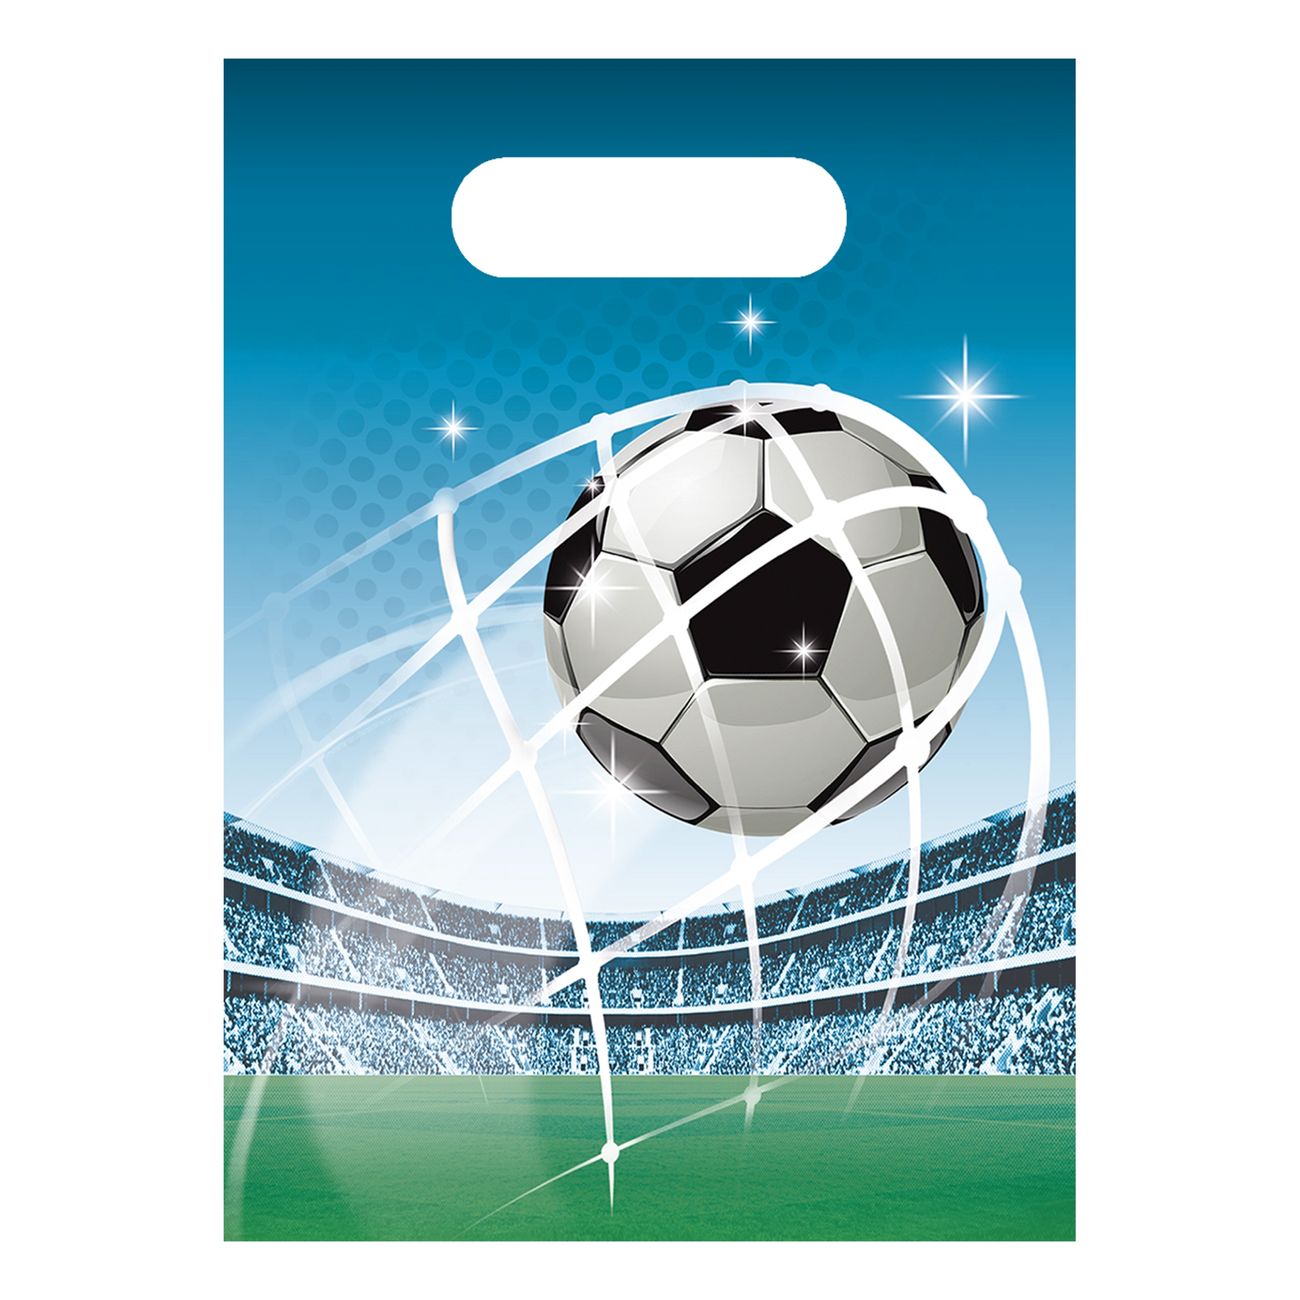 kalaspasar-fotboll-87955-1